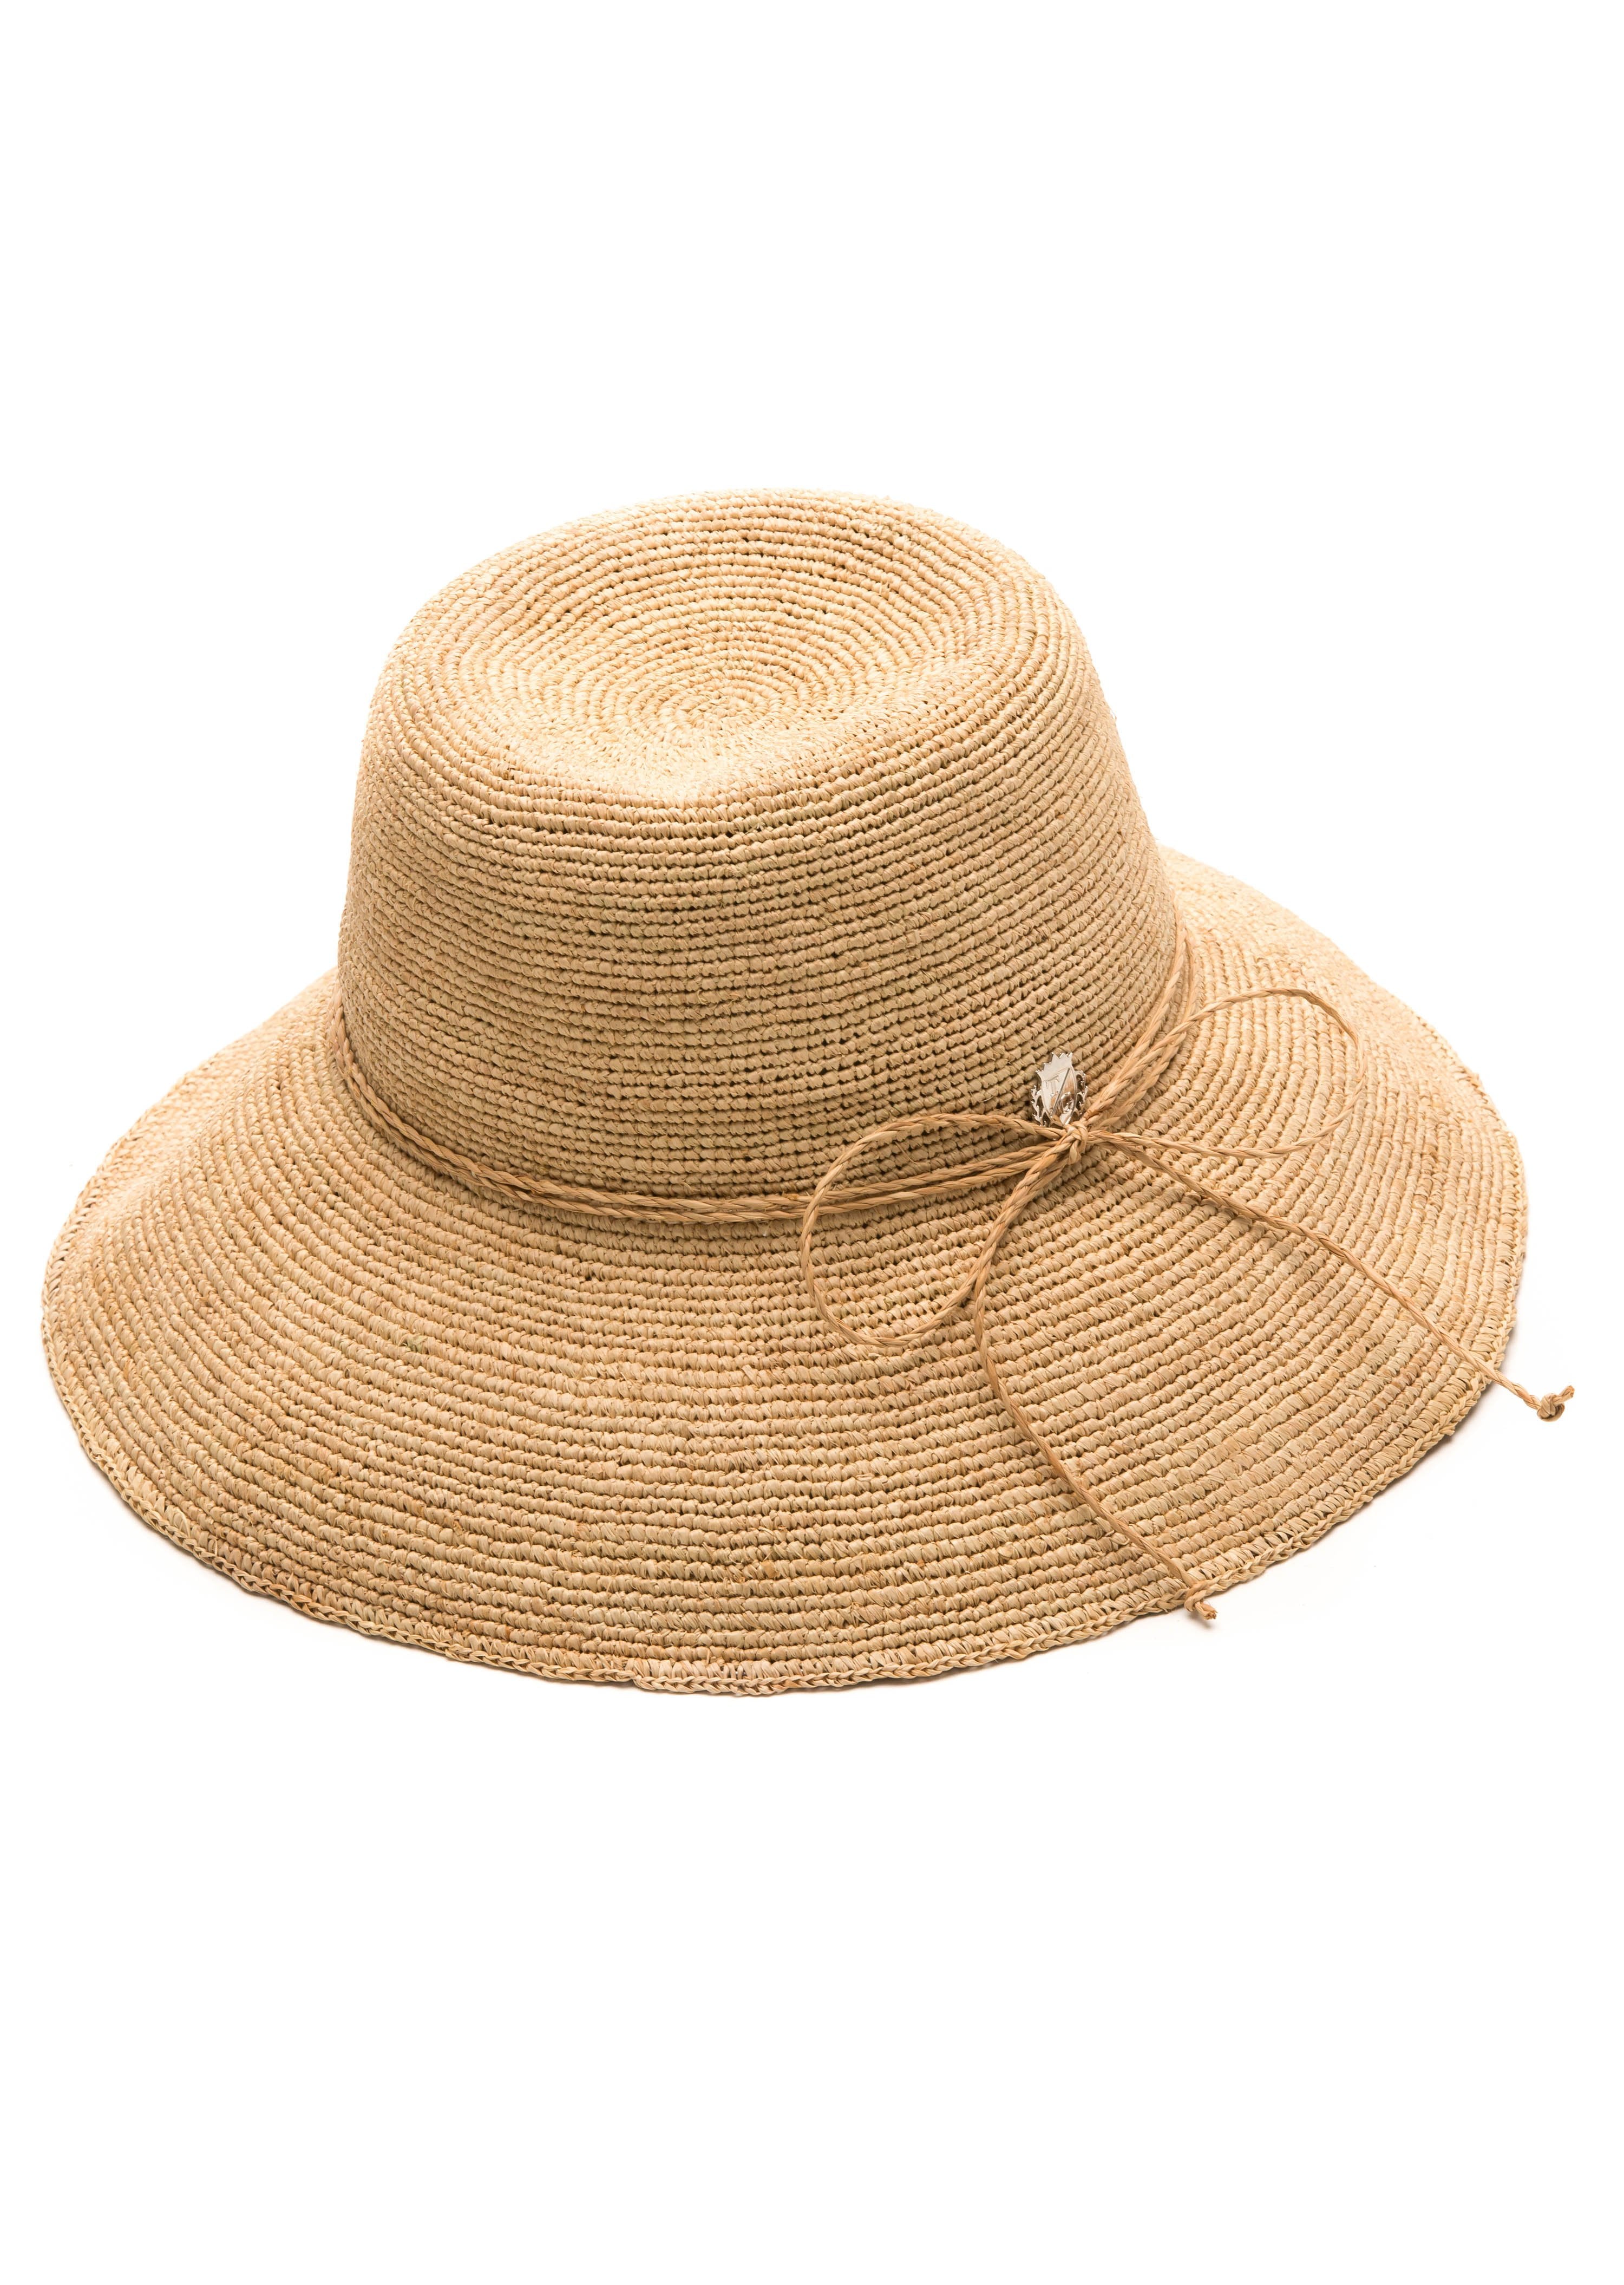 Isadora Raffia Bucket Hat with Natural Trim